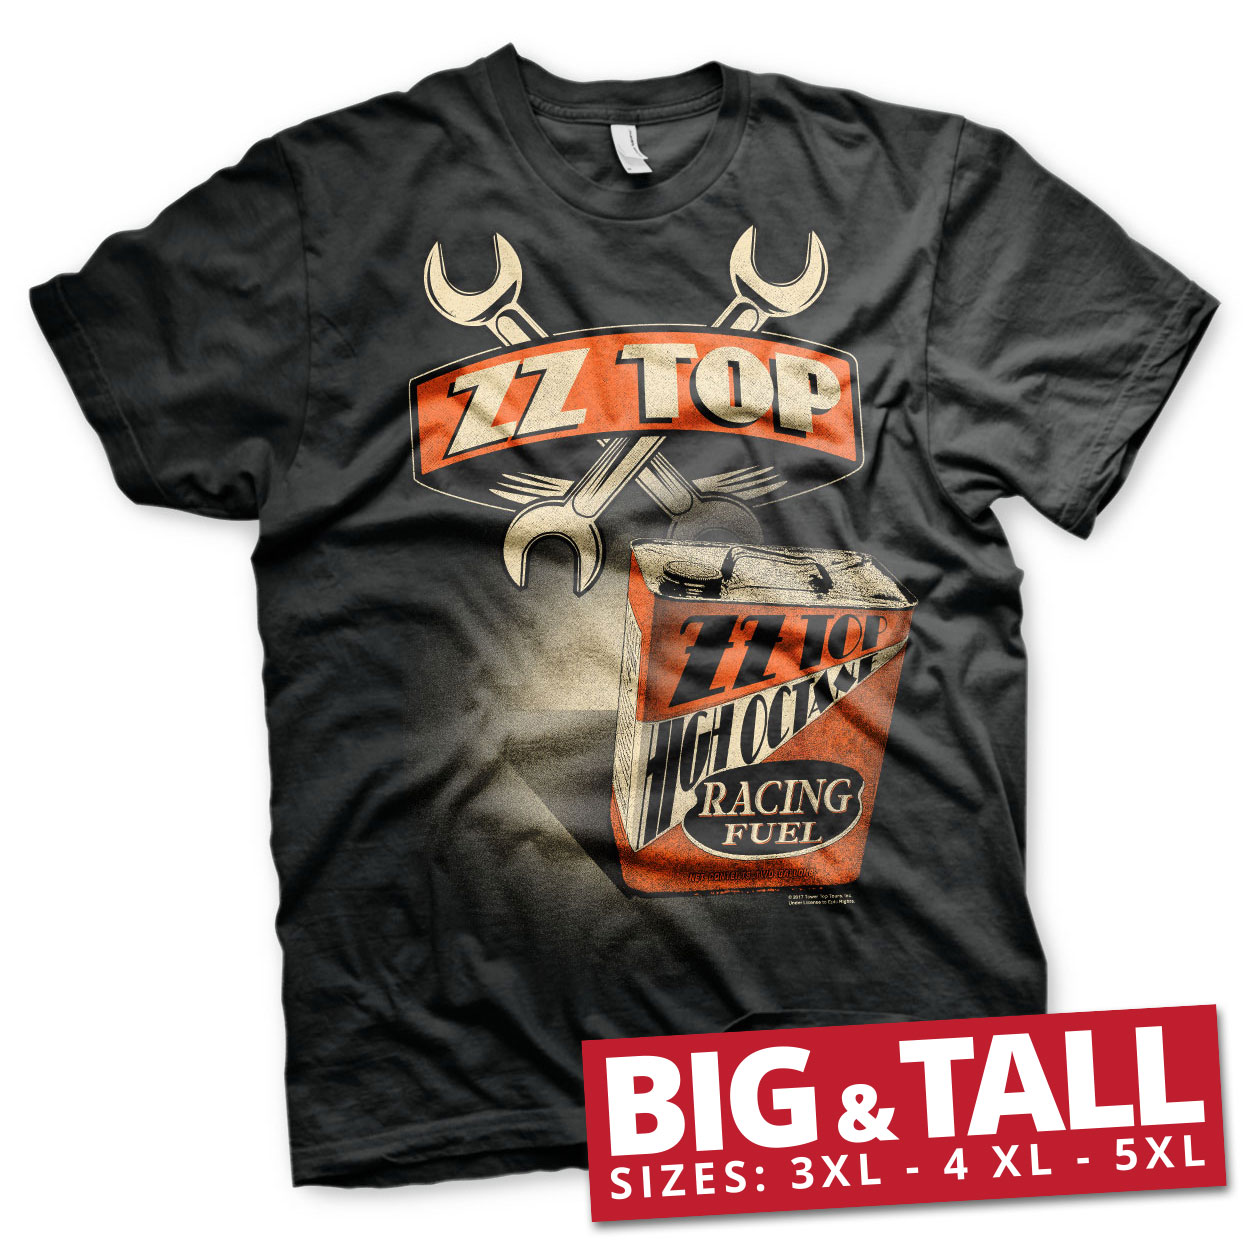 ZZ-Top High Octane Racing Fuel Big & Tall T-Shirt